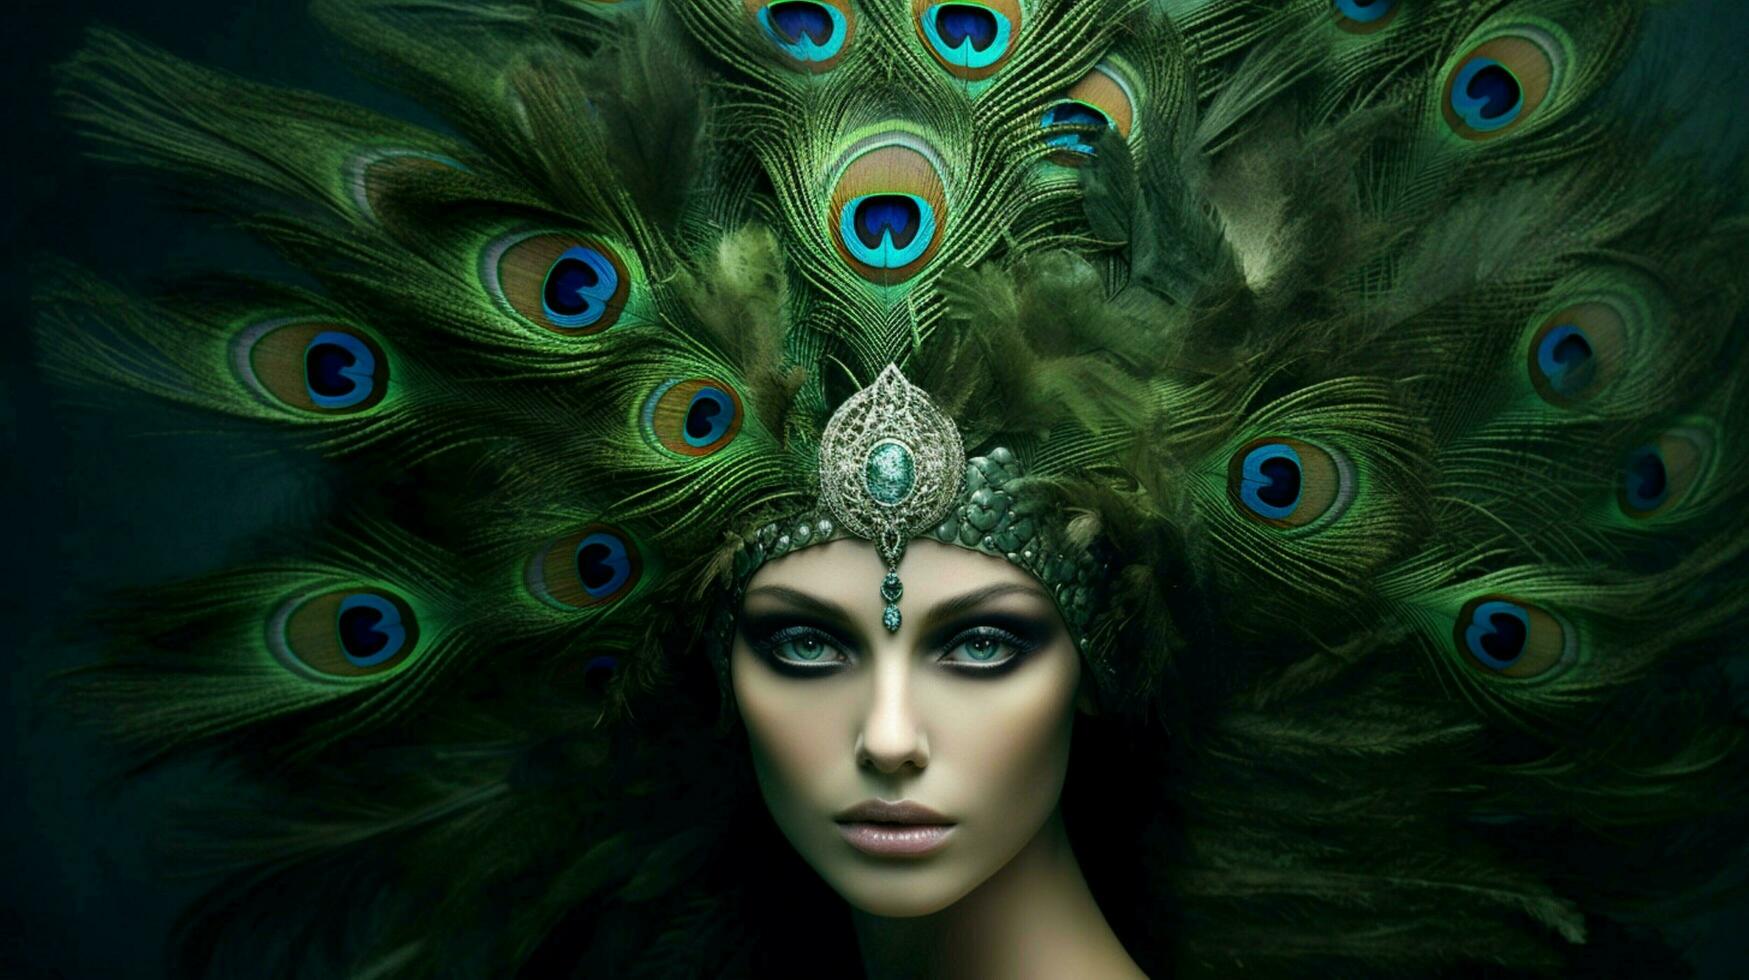 un mujer con un pavo real pluma en su cabeza foto